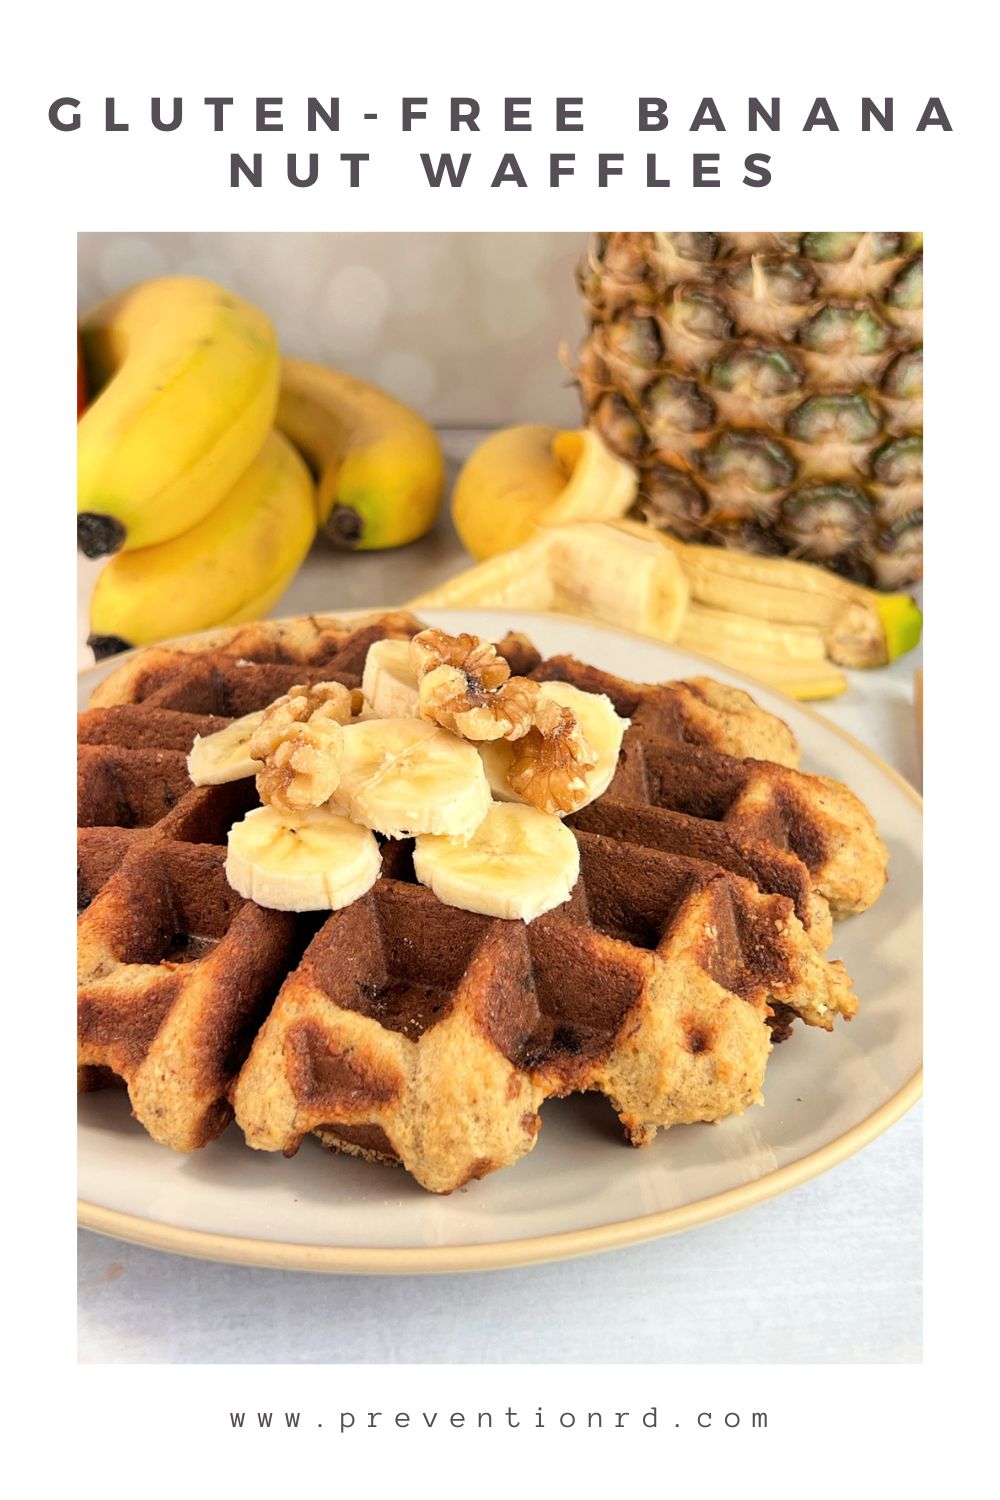 Waffles de nueces y plátano sin gluten a través de @preventionrd